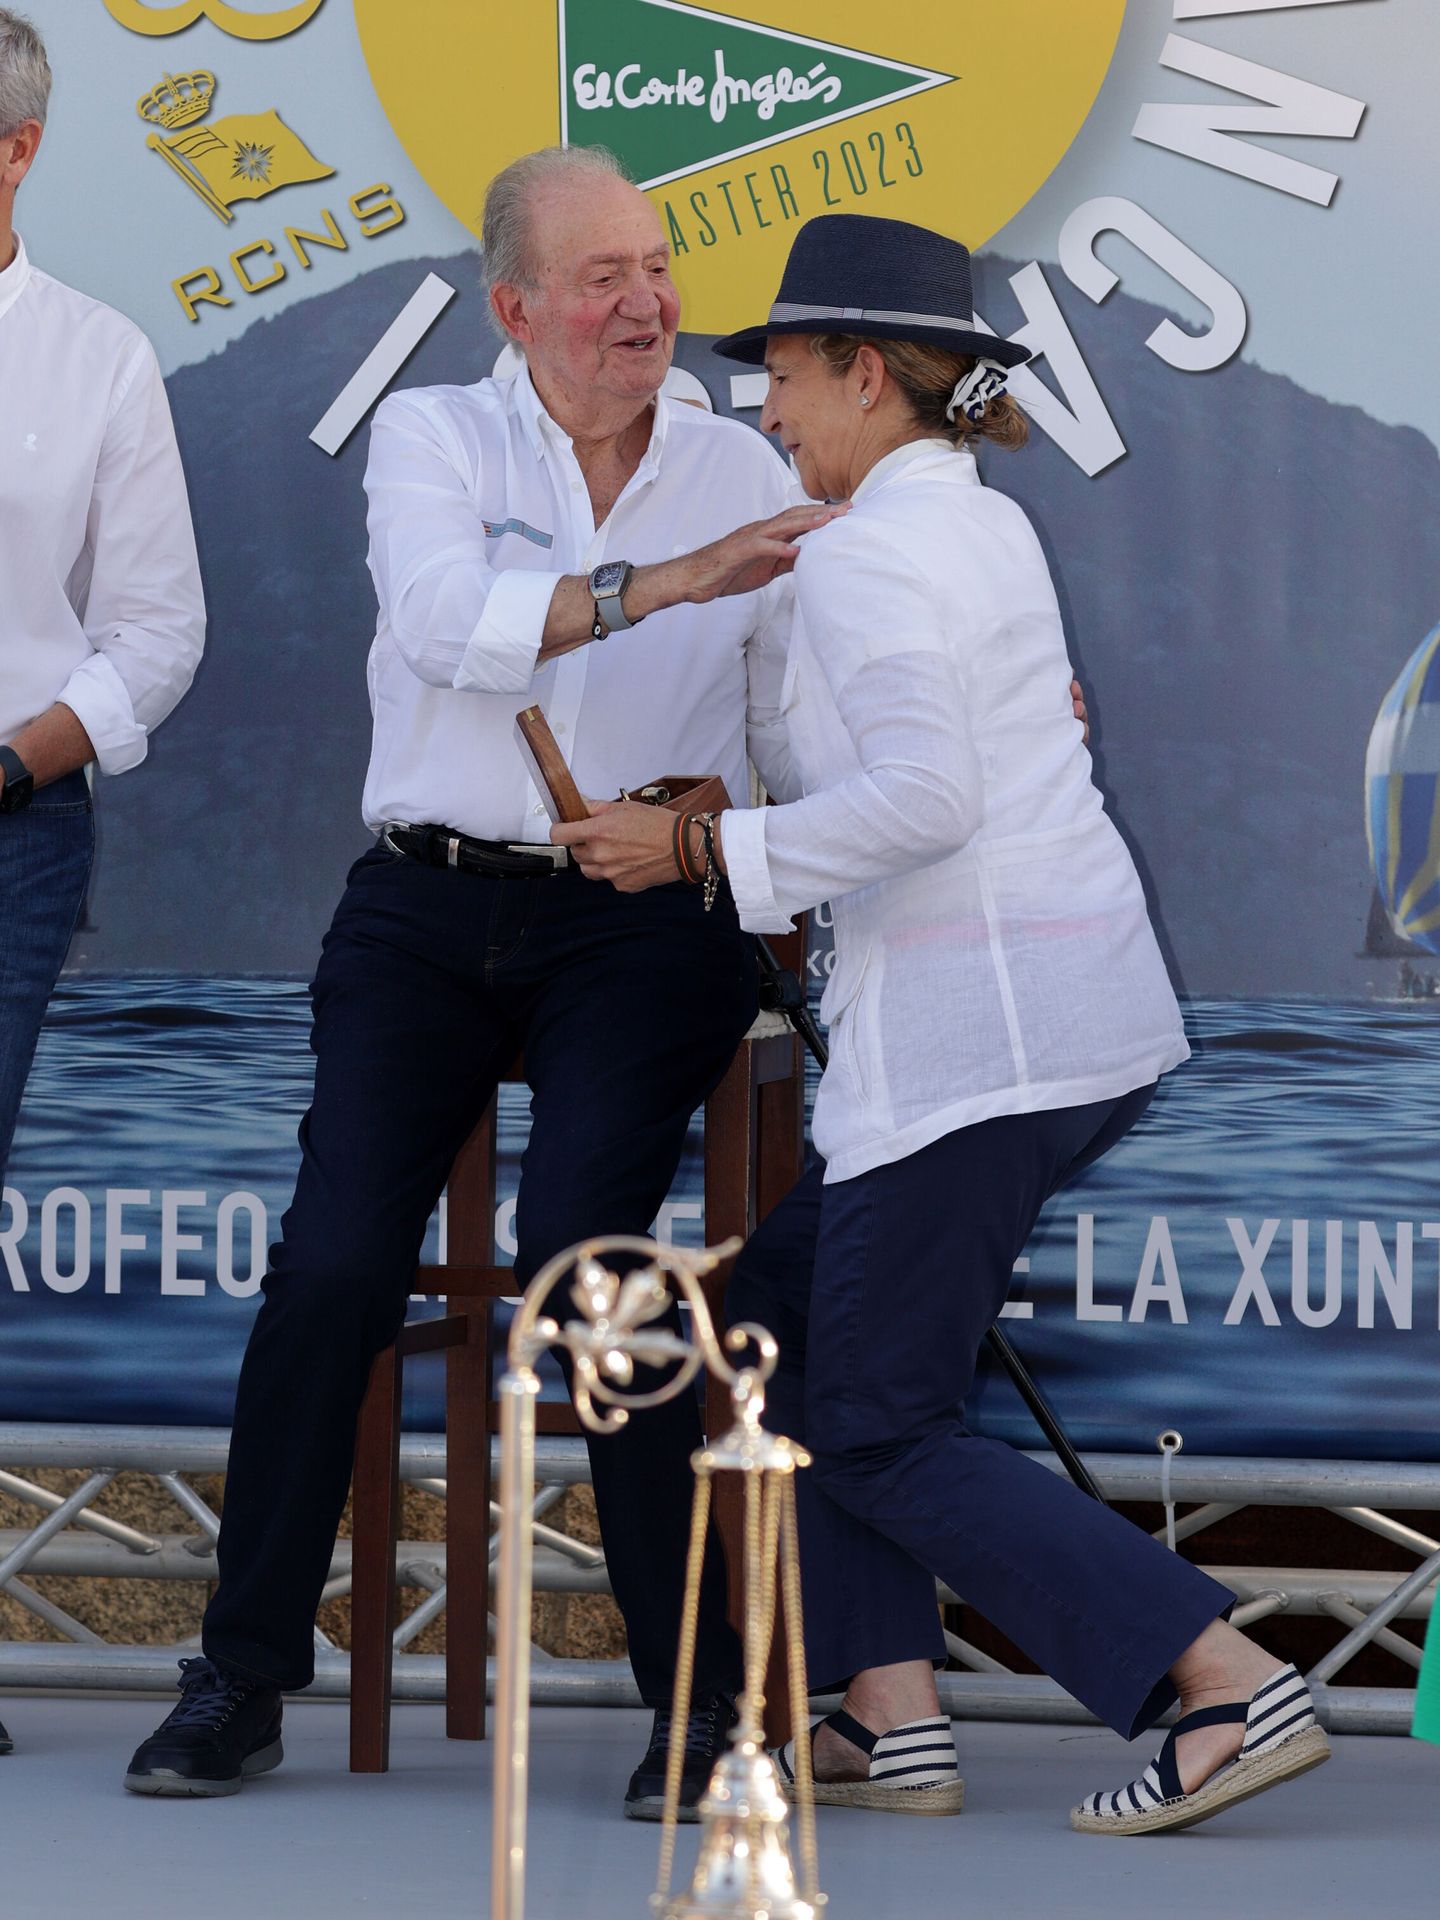 El rey Juan Carlos y la infanta Elena durante la entrega de premios de la 8ª edición de las Regatas Rey Juan Carlos, en Sanxenxo. (EP)